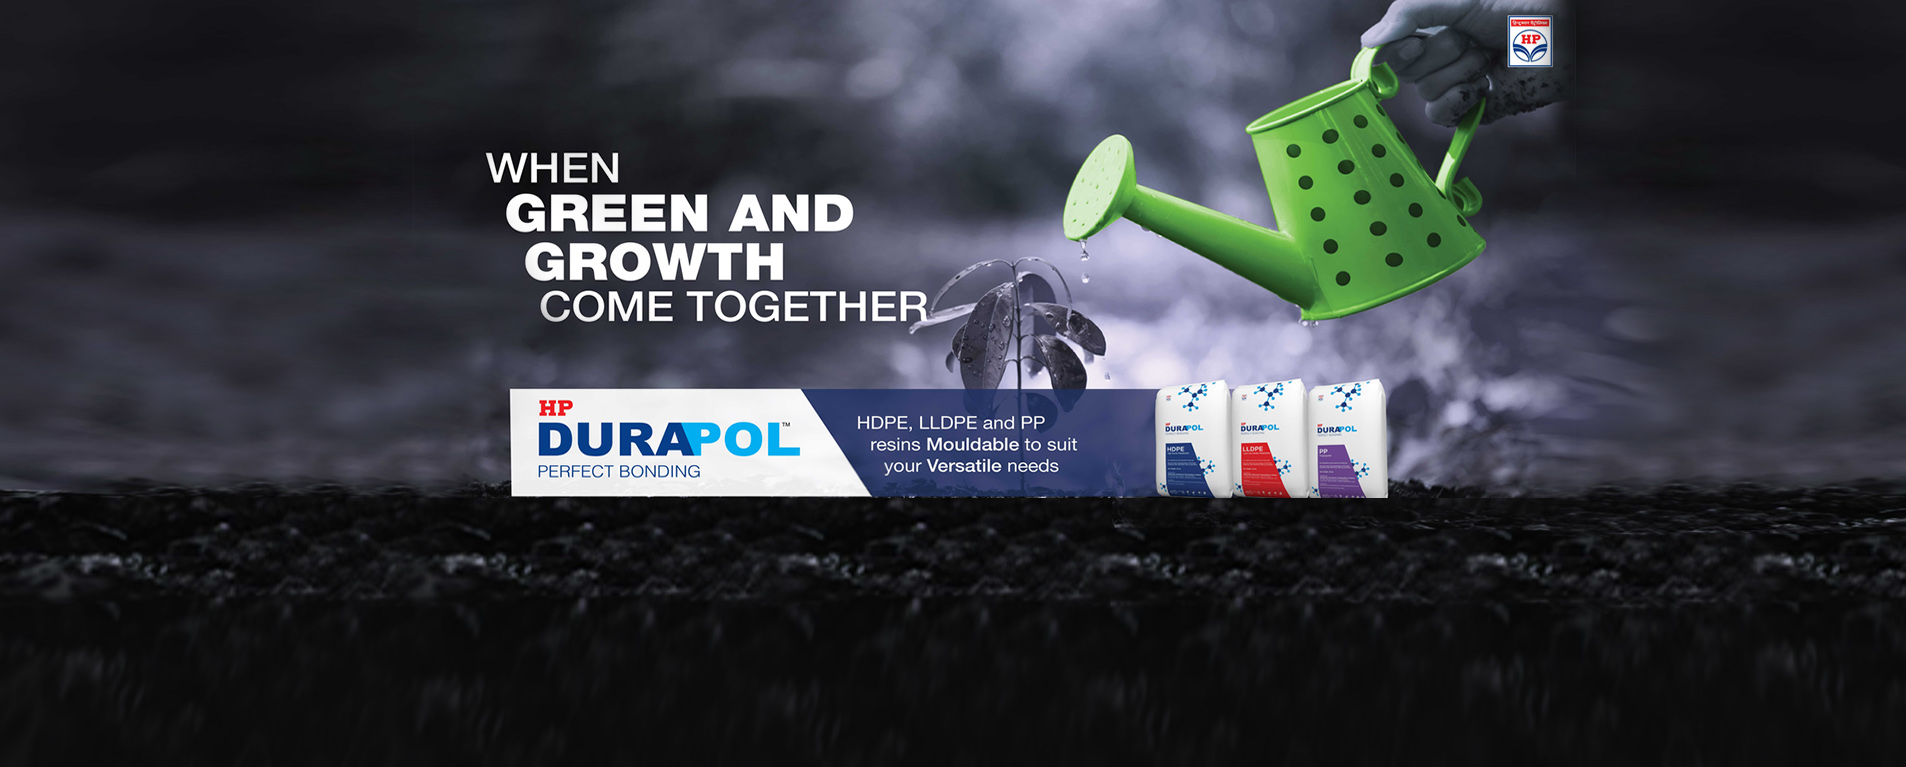 Durapol Brand Campaign - 6